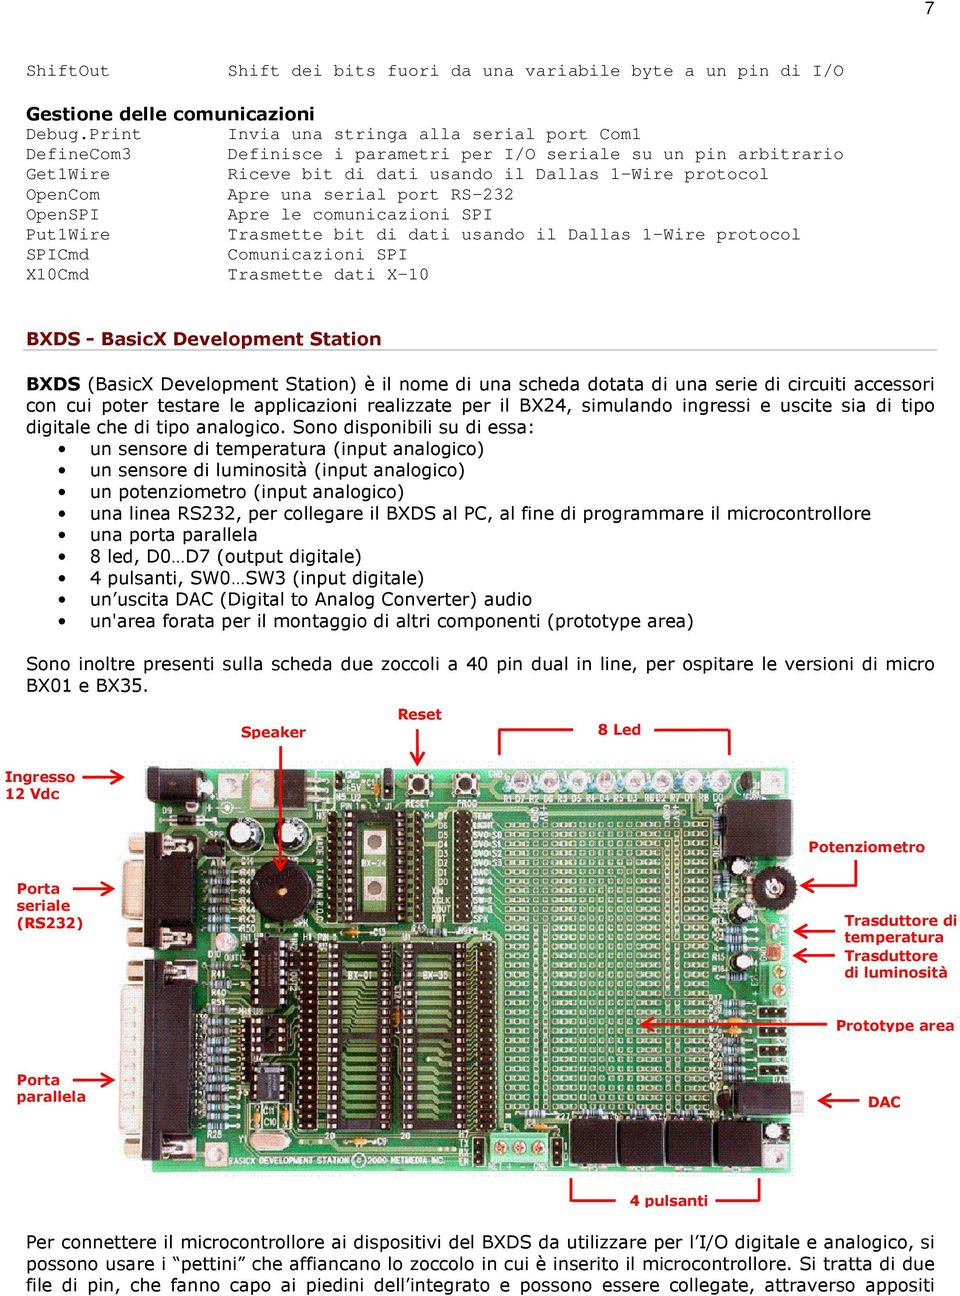 serial port RS-232 OpenSPI Apre le comunicazioni SPI Put1Wire Trasmette bit di dati usando il Dallas 1-Wire protocol SPICmd Comunicazioni SPI X10Cmd Trasmette dati X-10 BXDS - BasicX Development